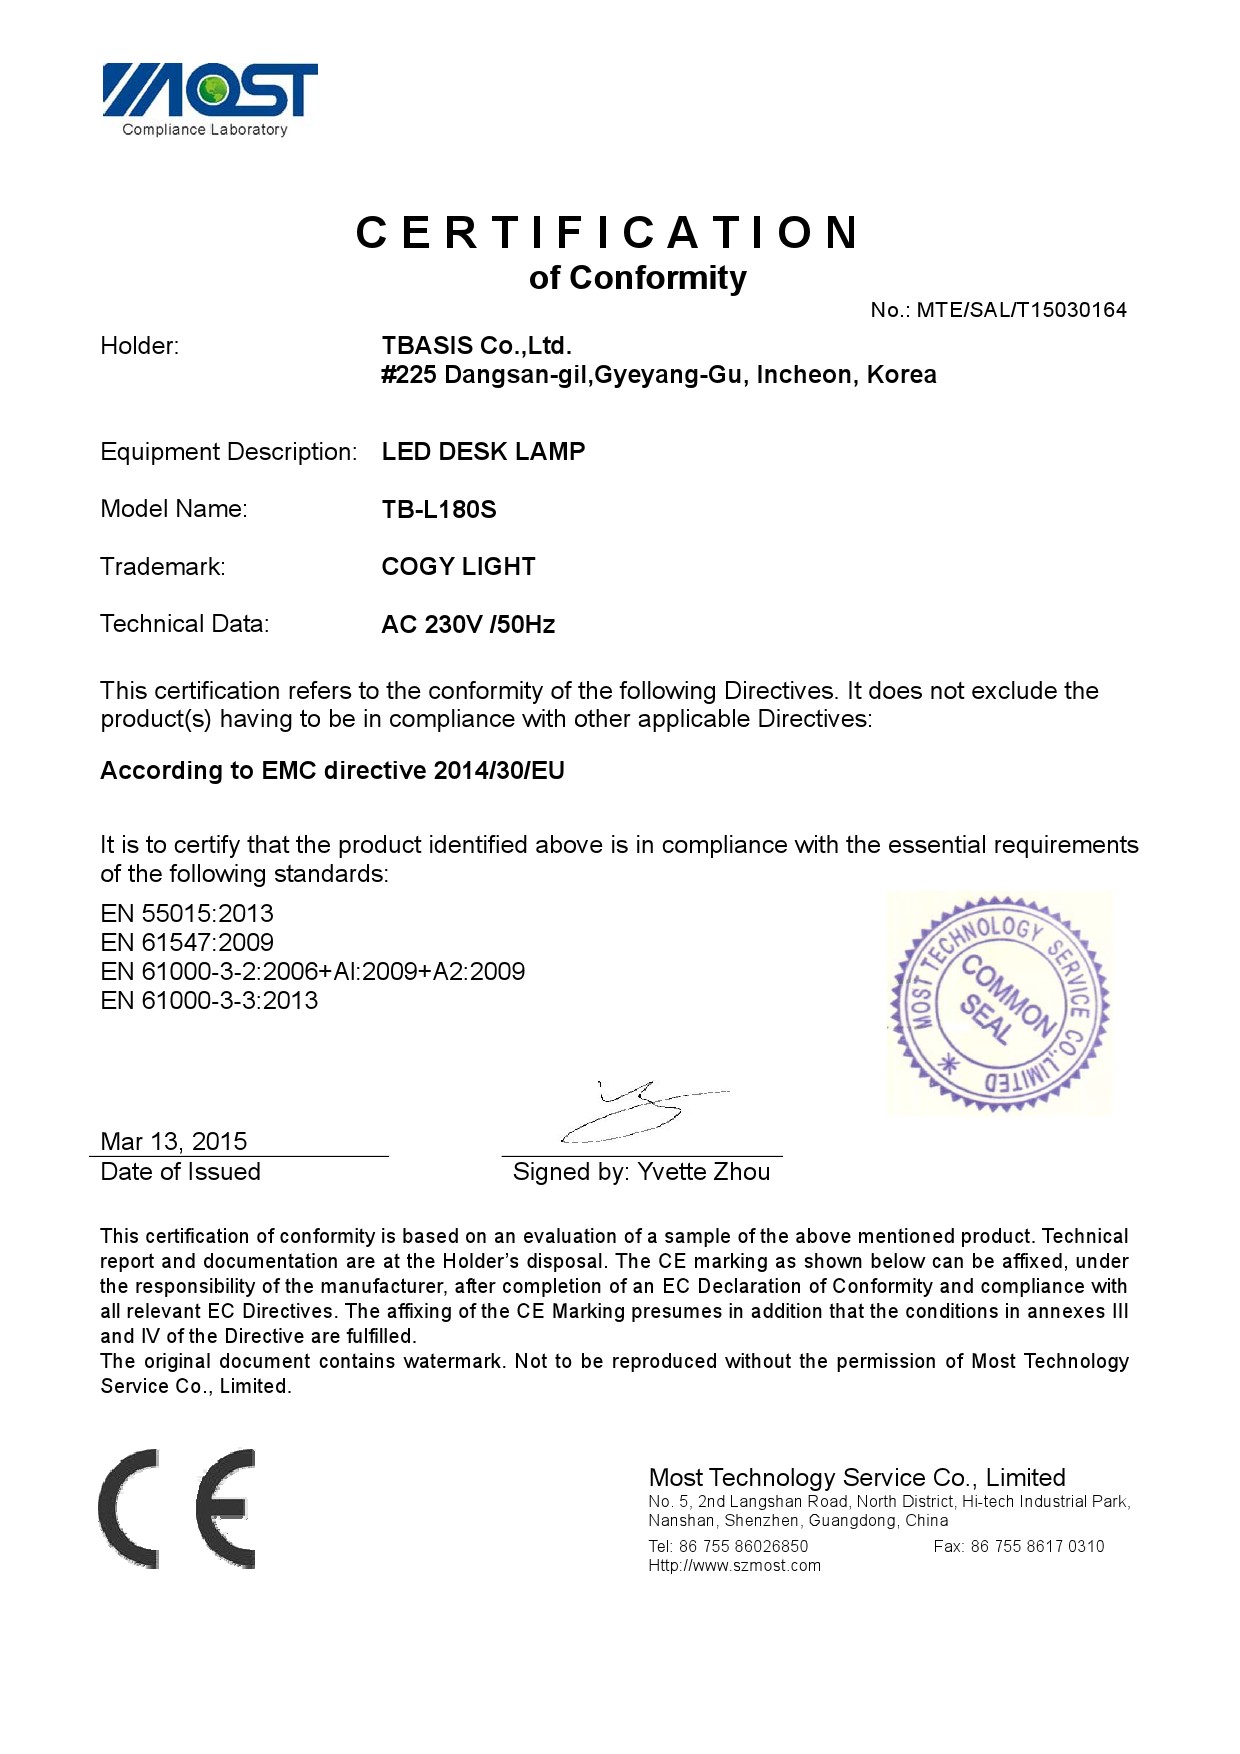 TB-L180S Certificate EMC